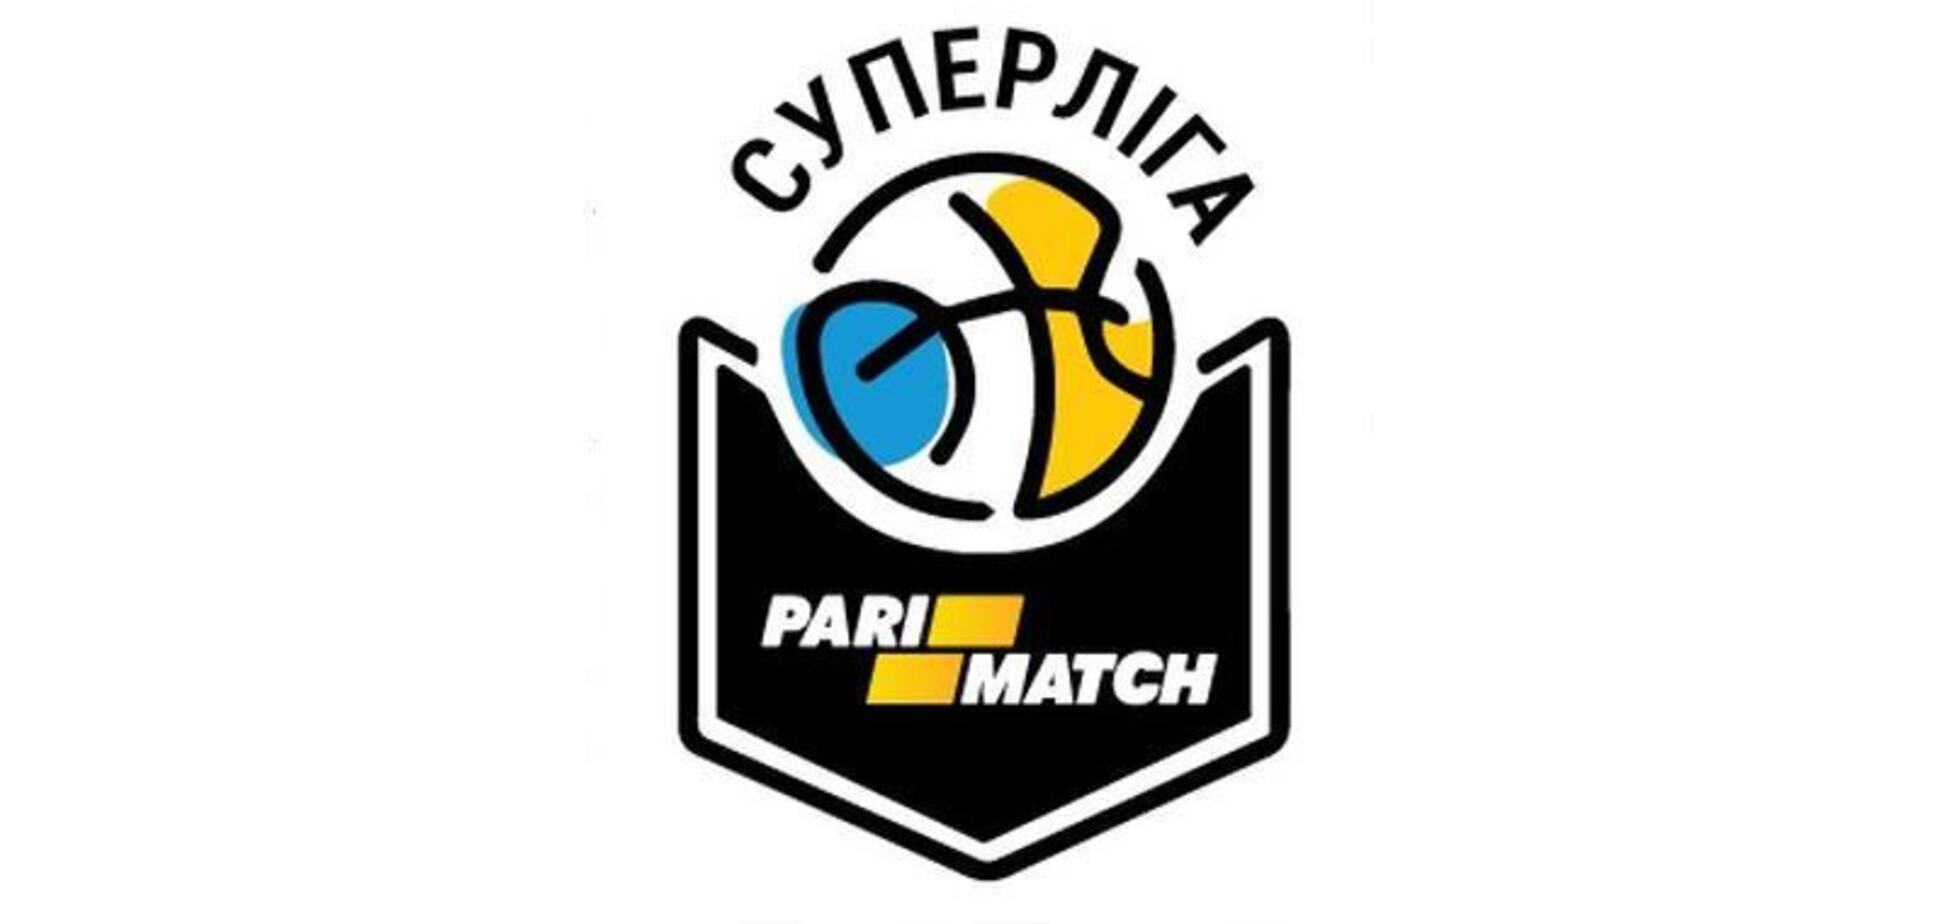 Быстро развивается: Федерация баскетбола Украины и Parimatch продлили партнерство